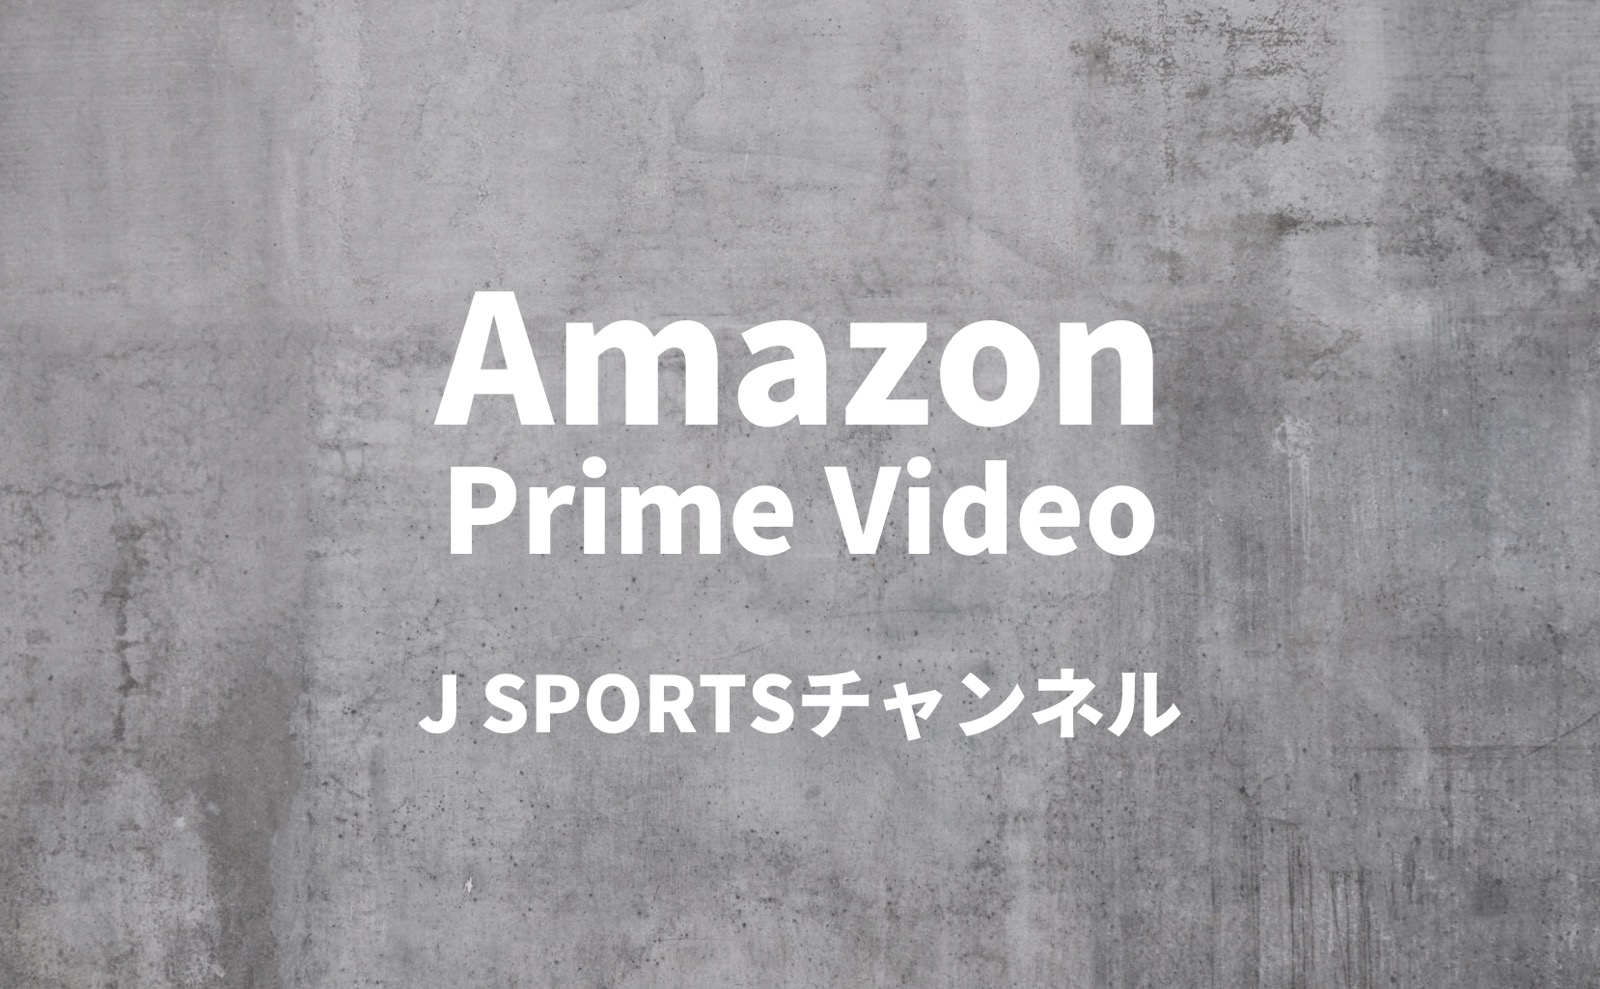 Amazon Prime Video J SPORTSチャンネル